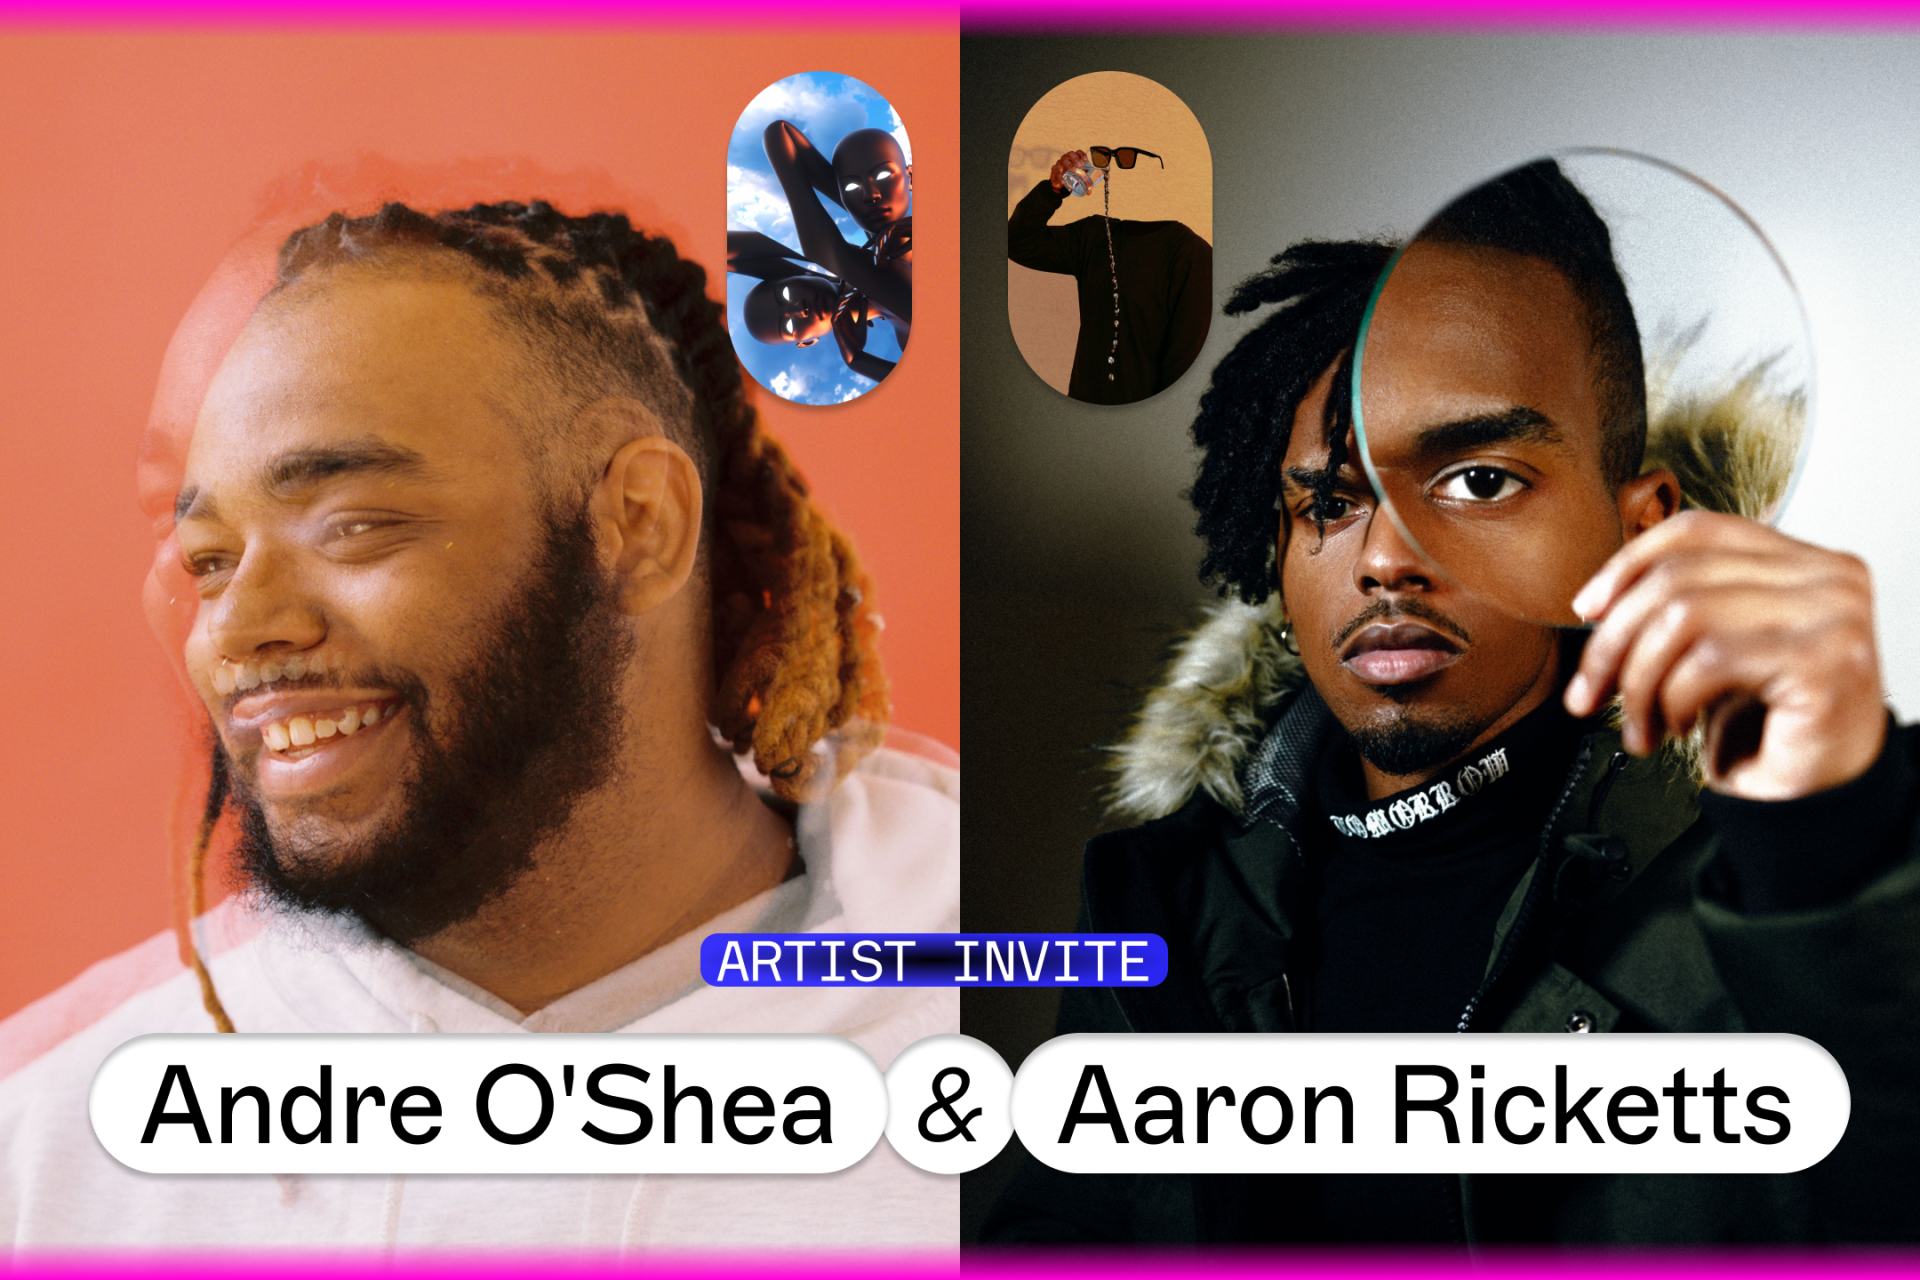 Artist Invite: Andre O’Shea & Aaron Ricketts